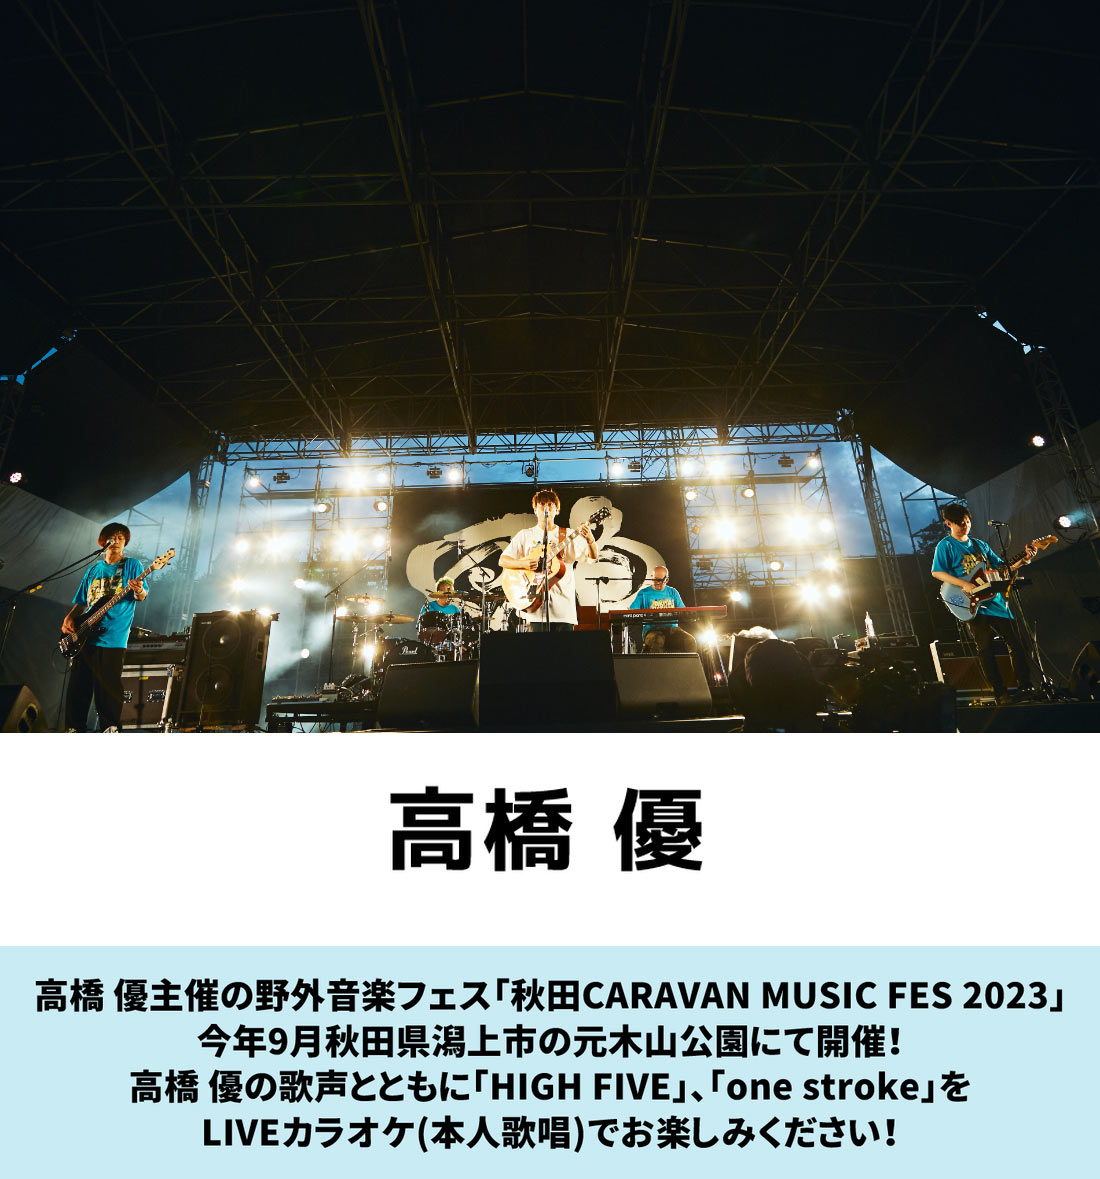 高橋 優 秋田CARAVAN MUSIC FES 2023(LIVEカラオケ/本人歌唱)